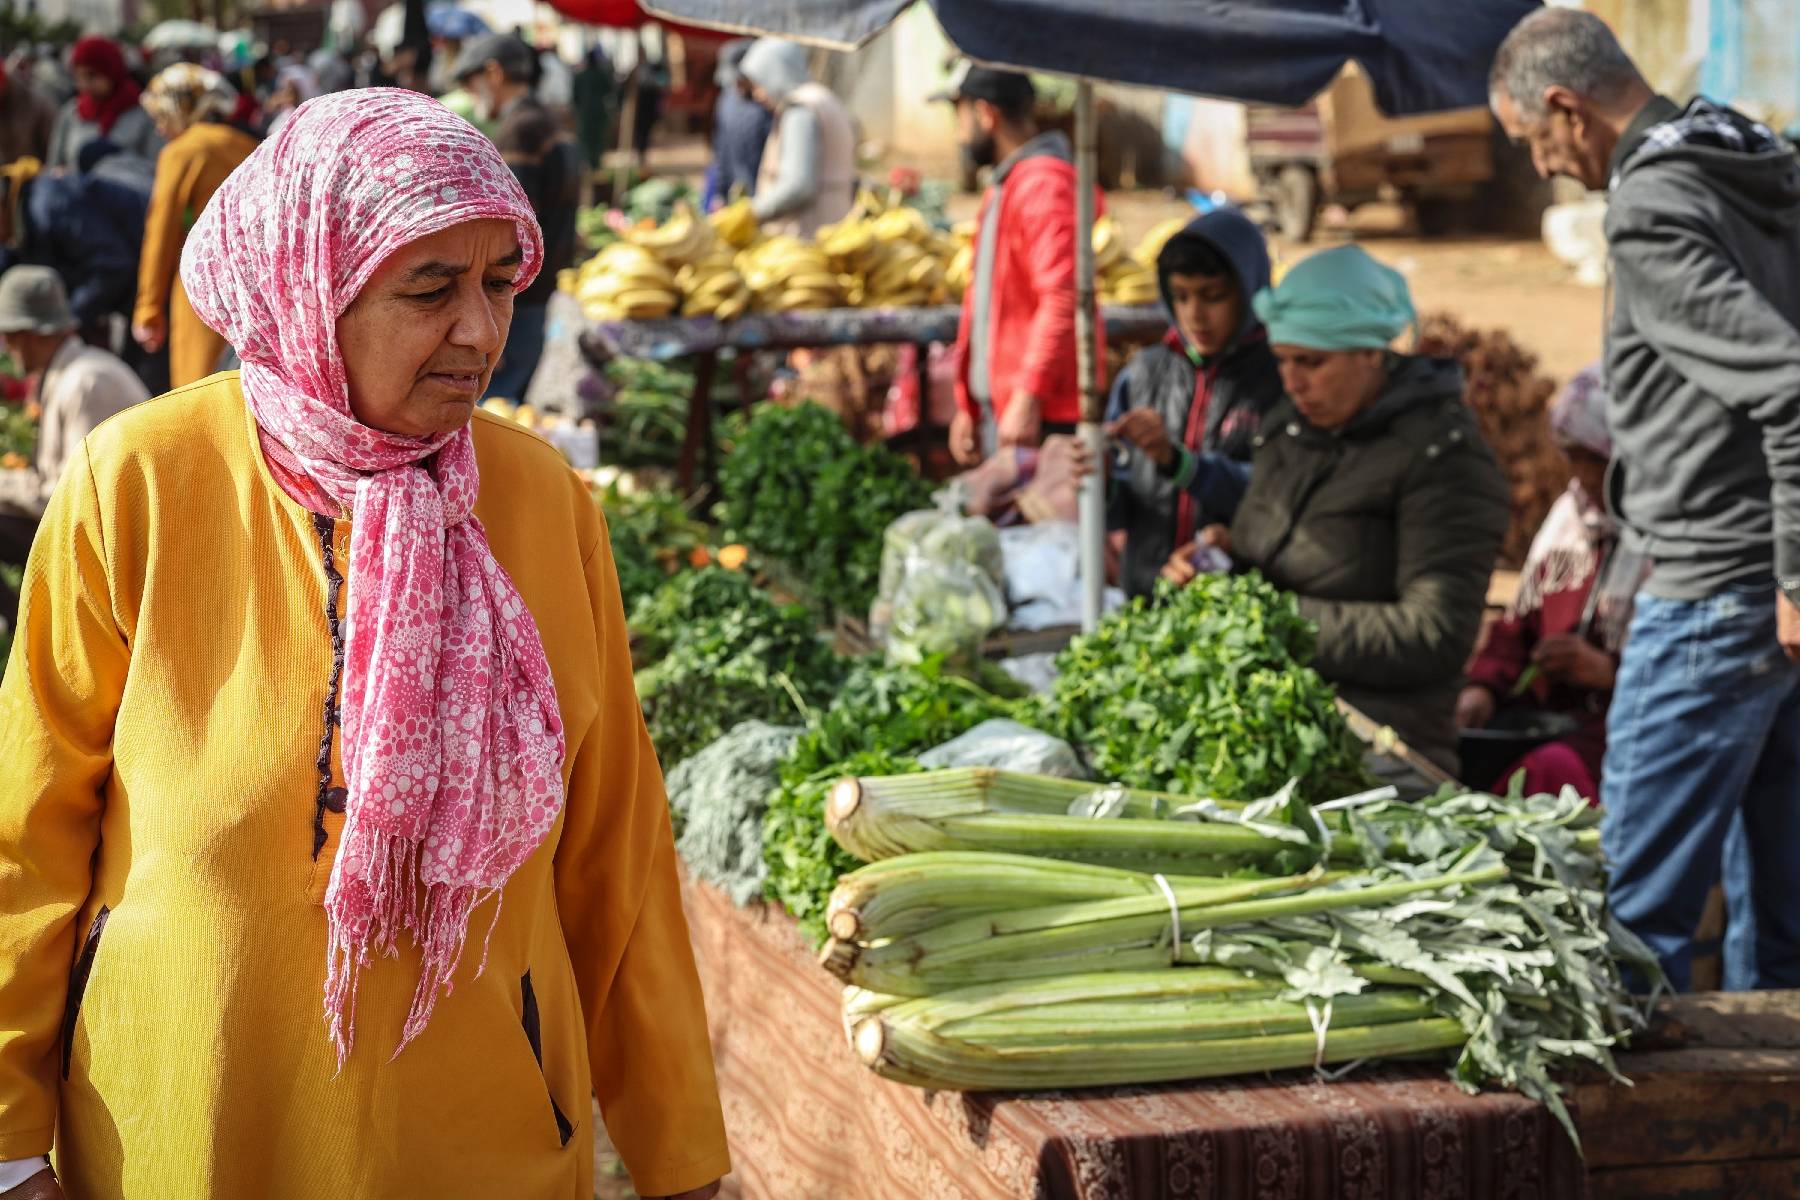 Au Maroc, l'envolée des prix déprime les ménages modestes avant le ramadan